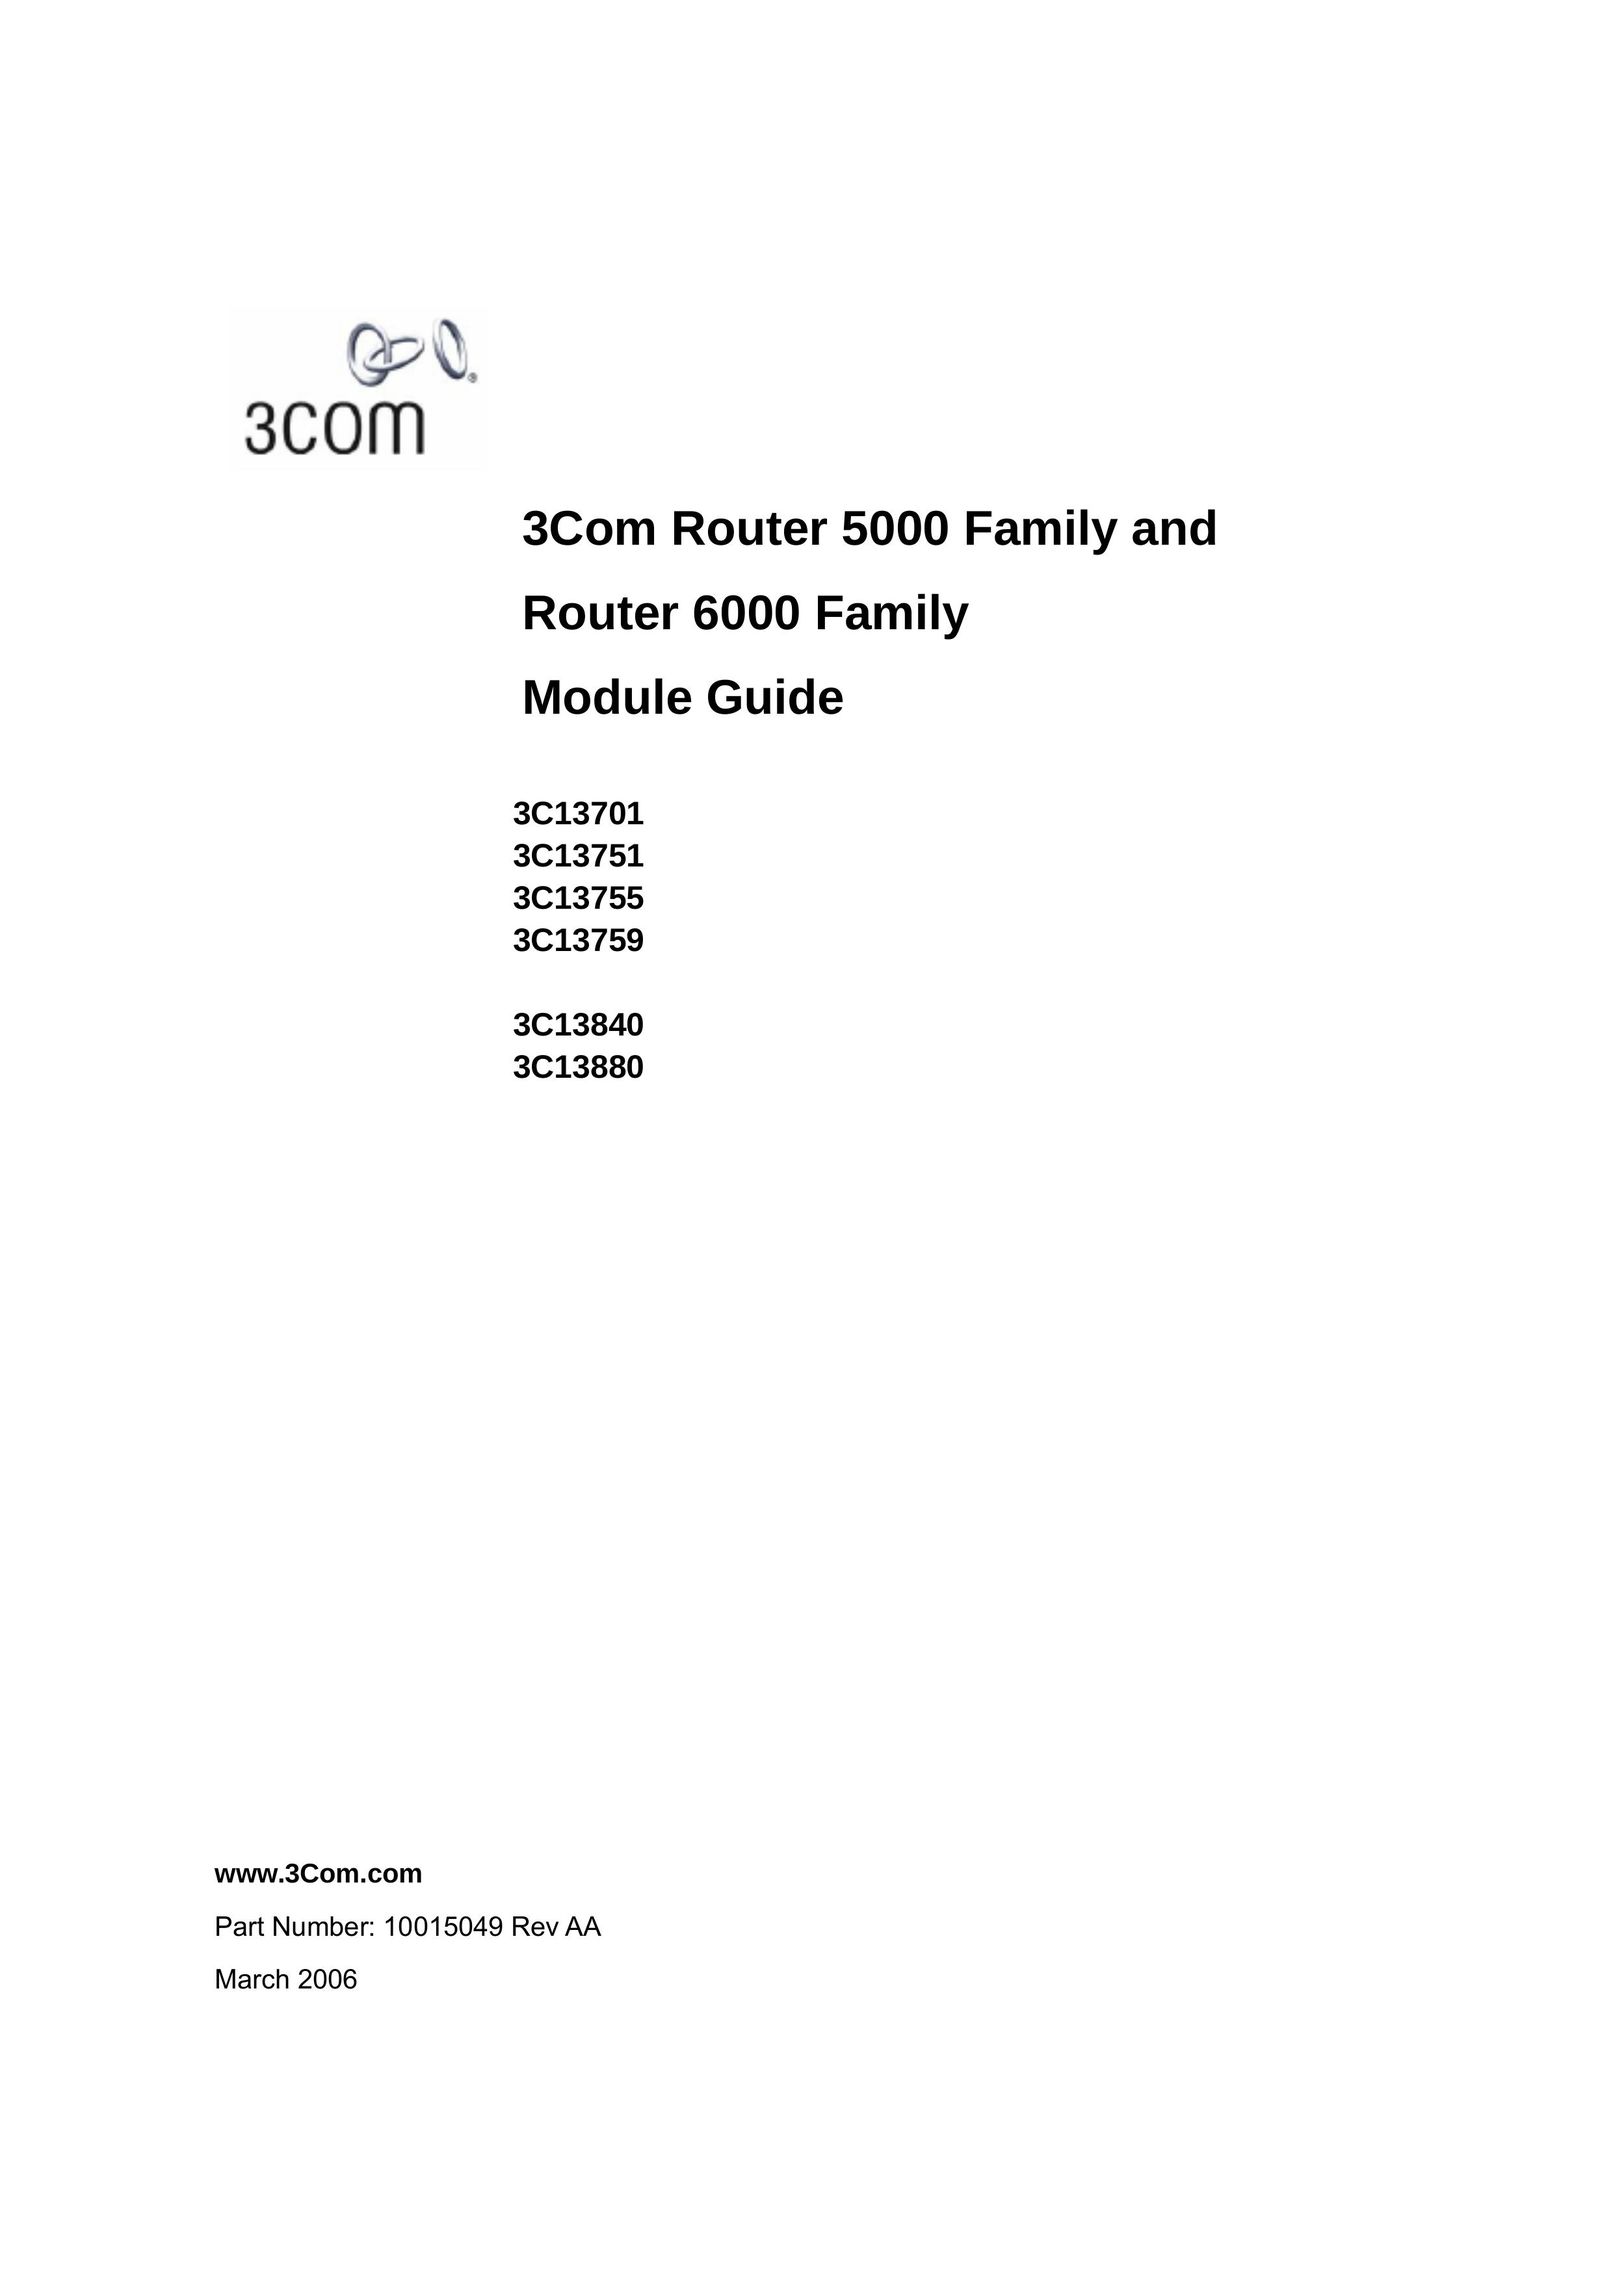 3Com 3C13701 3C13751 3C13755 3C13759 3C13840 3C13880 Network Router User Manual